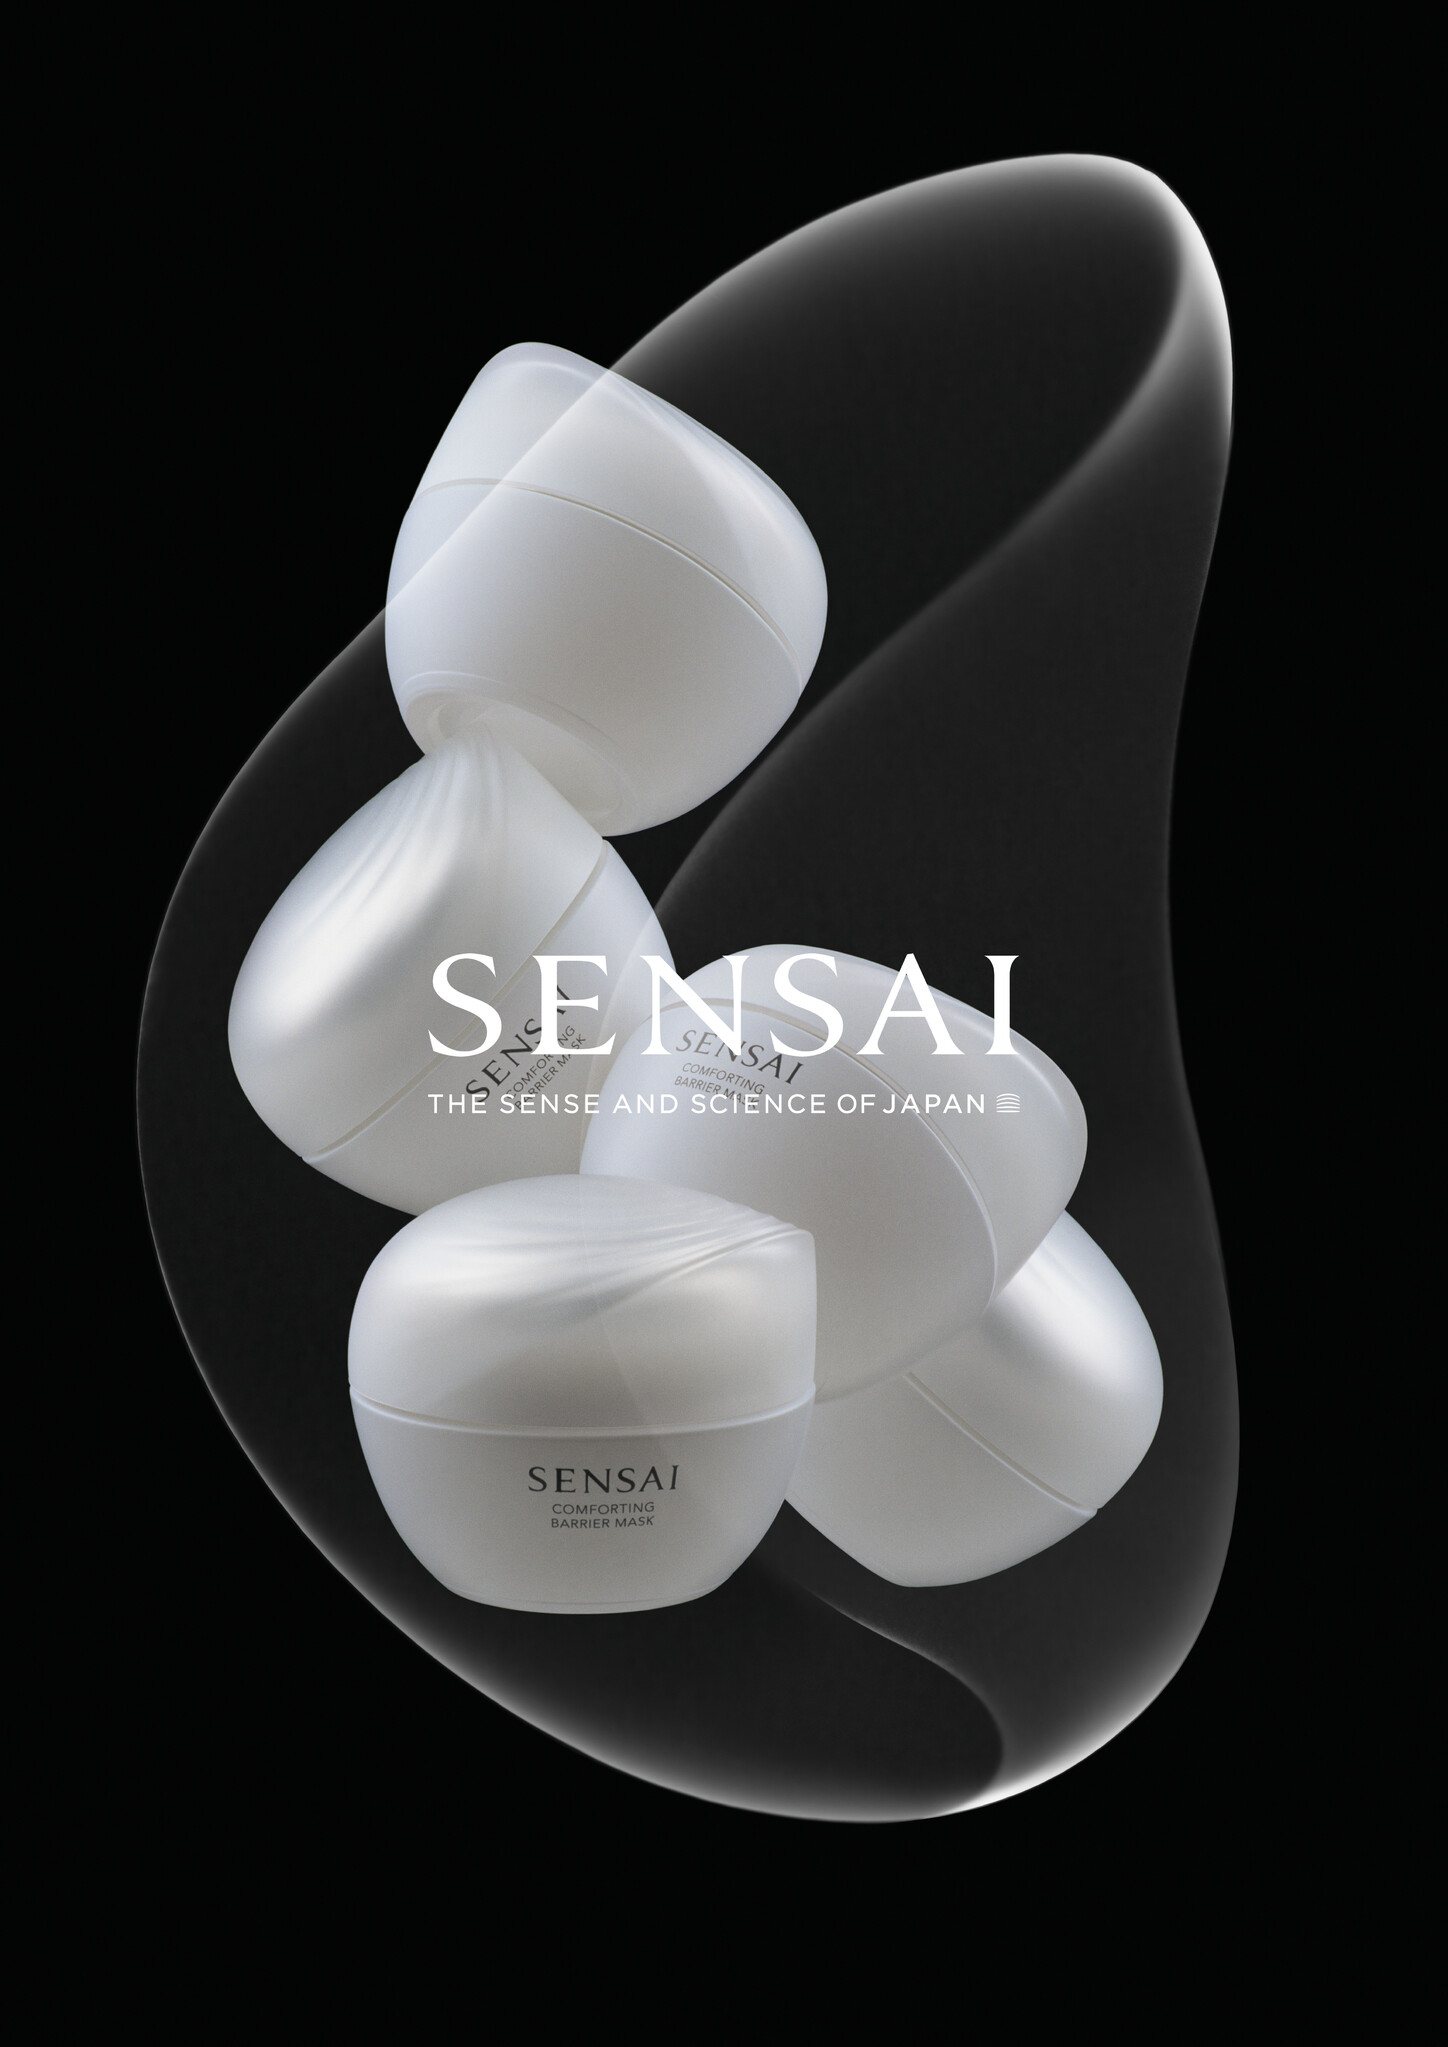 品質販売カネボウ化粧品 SENSAIセンサイコンフォーティングバリアマスク フェイスクリーム